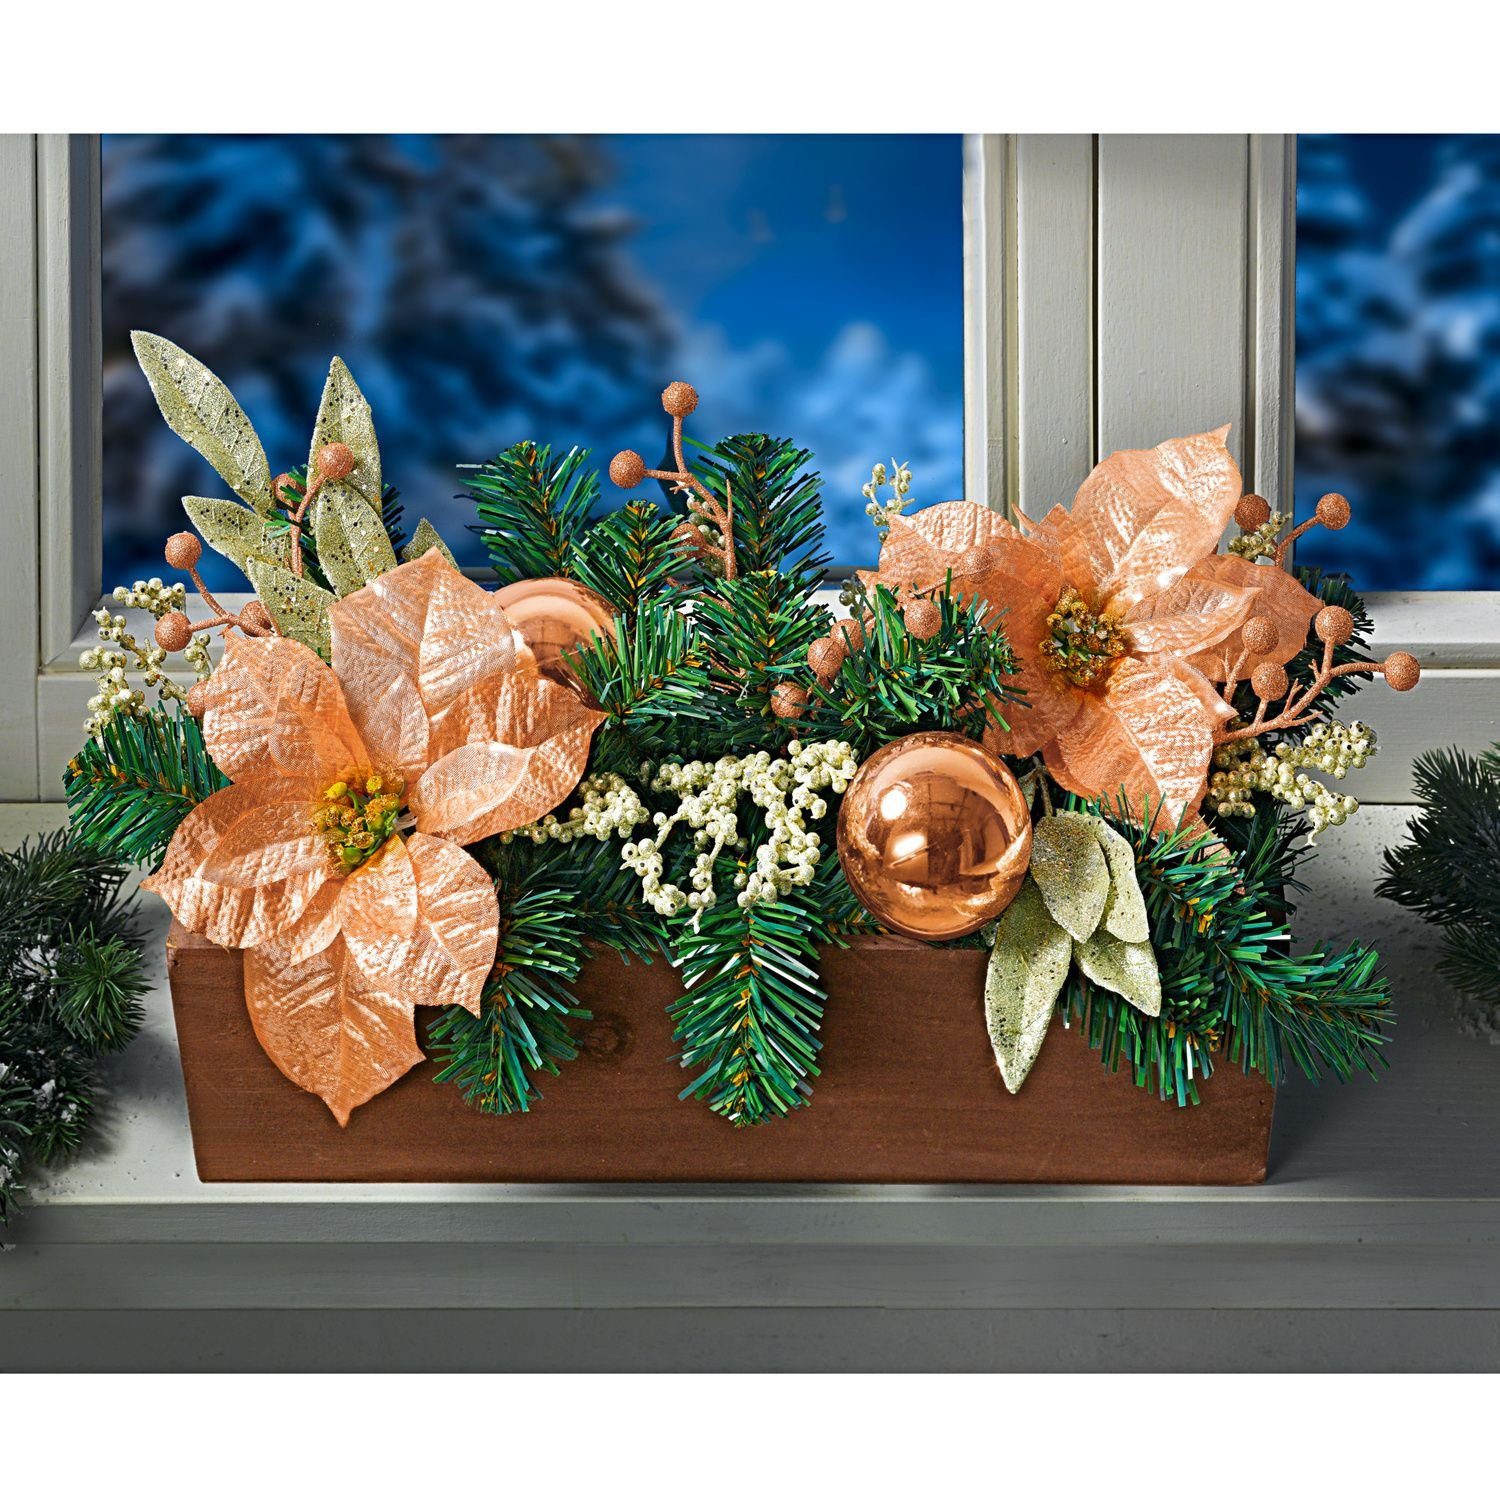 3PAGEN Blumenkasten Balkonkasten mit Weihnachtsschmuck 40cm Kugeln und Glitzer Winter